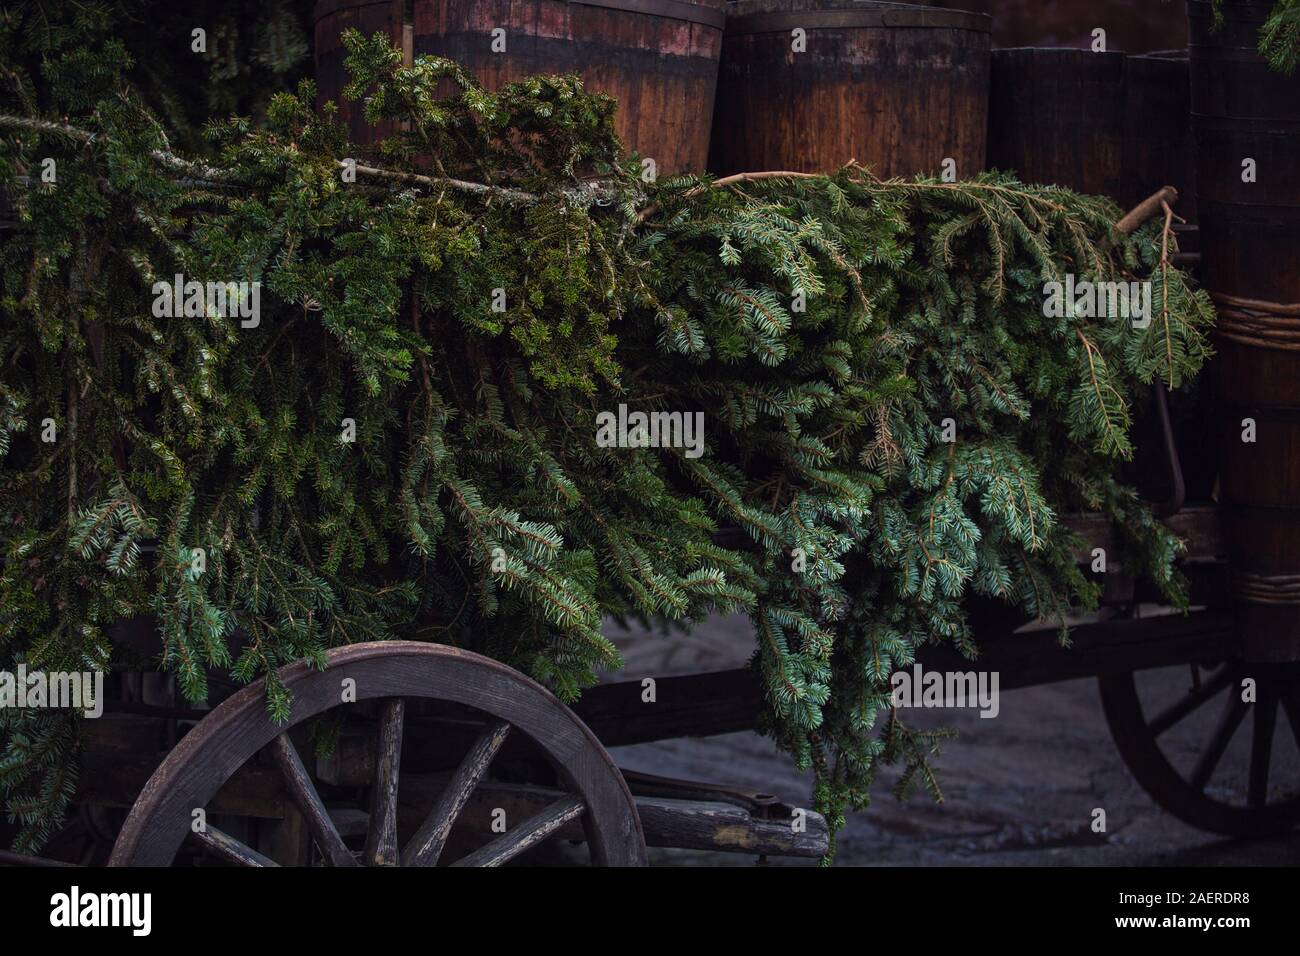 Campagne vintage fond de Noël avec une vieille charrette chargée de tonneaux de vin et des sapins de décorations. Prêt à commencer la foire pour winte Banque D'Images